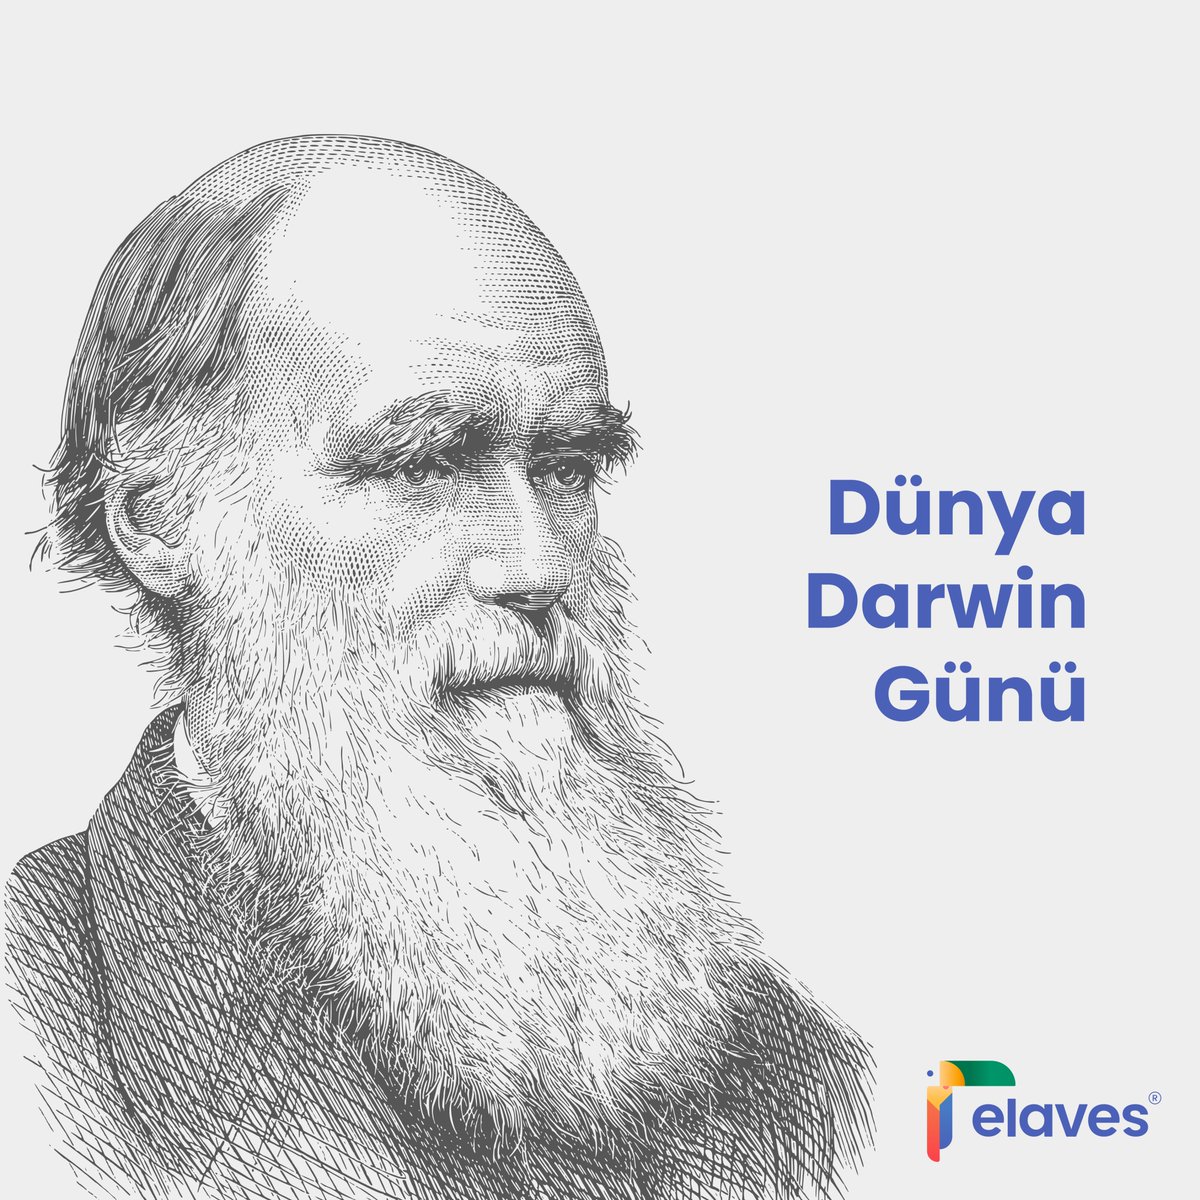 Charles Darwin'in doğum gününü ve bilime yaptığı devrim niteliğindeki katkılarını anıyoruz! Darwin'in örneklediği keşfetme, merak ve sürekli bilgi arayışının önemini hatırlayalım. #DarwinDay #DarwinGünü